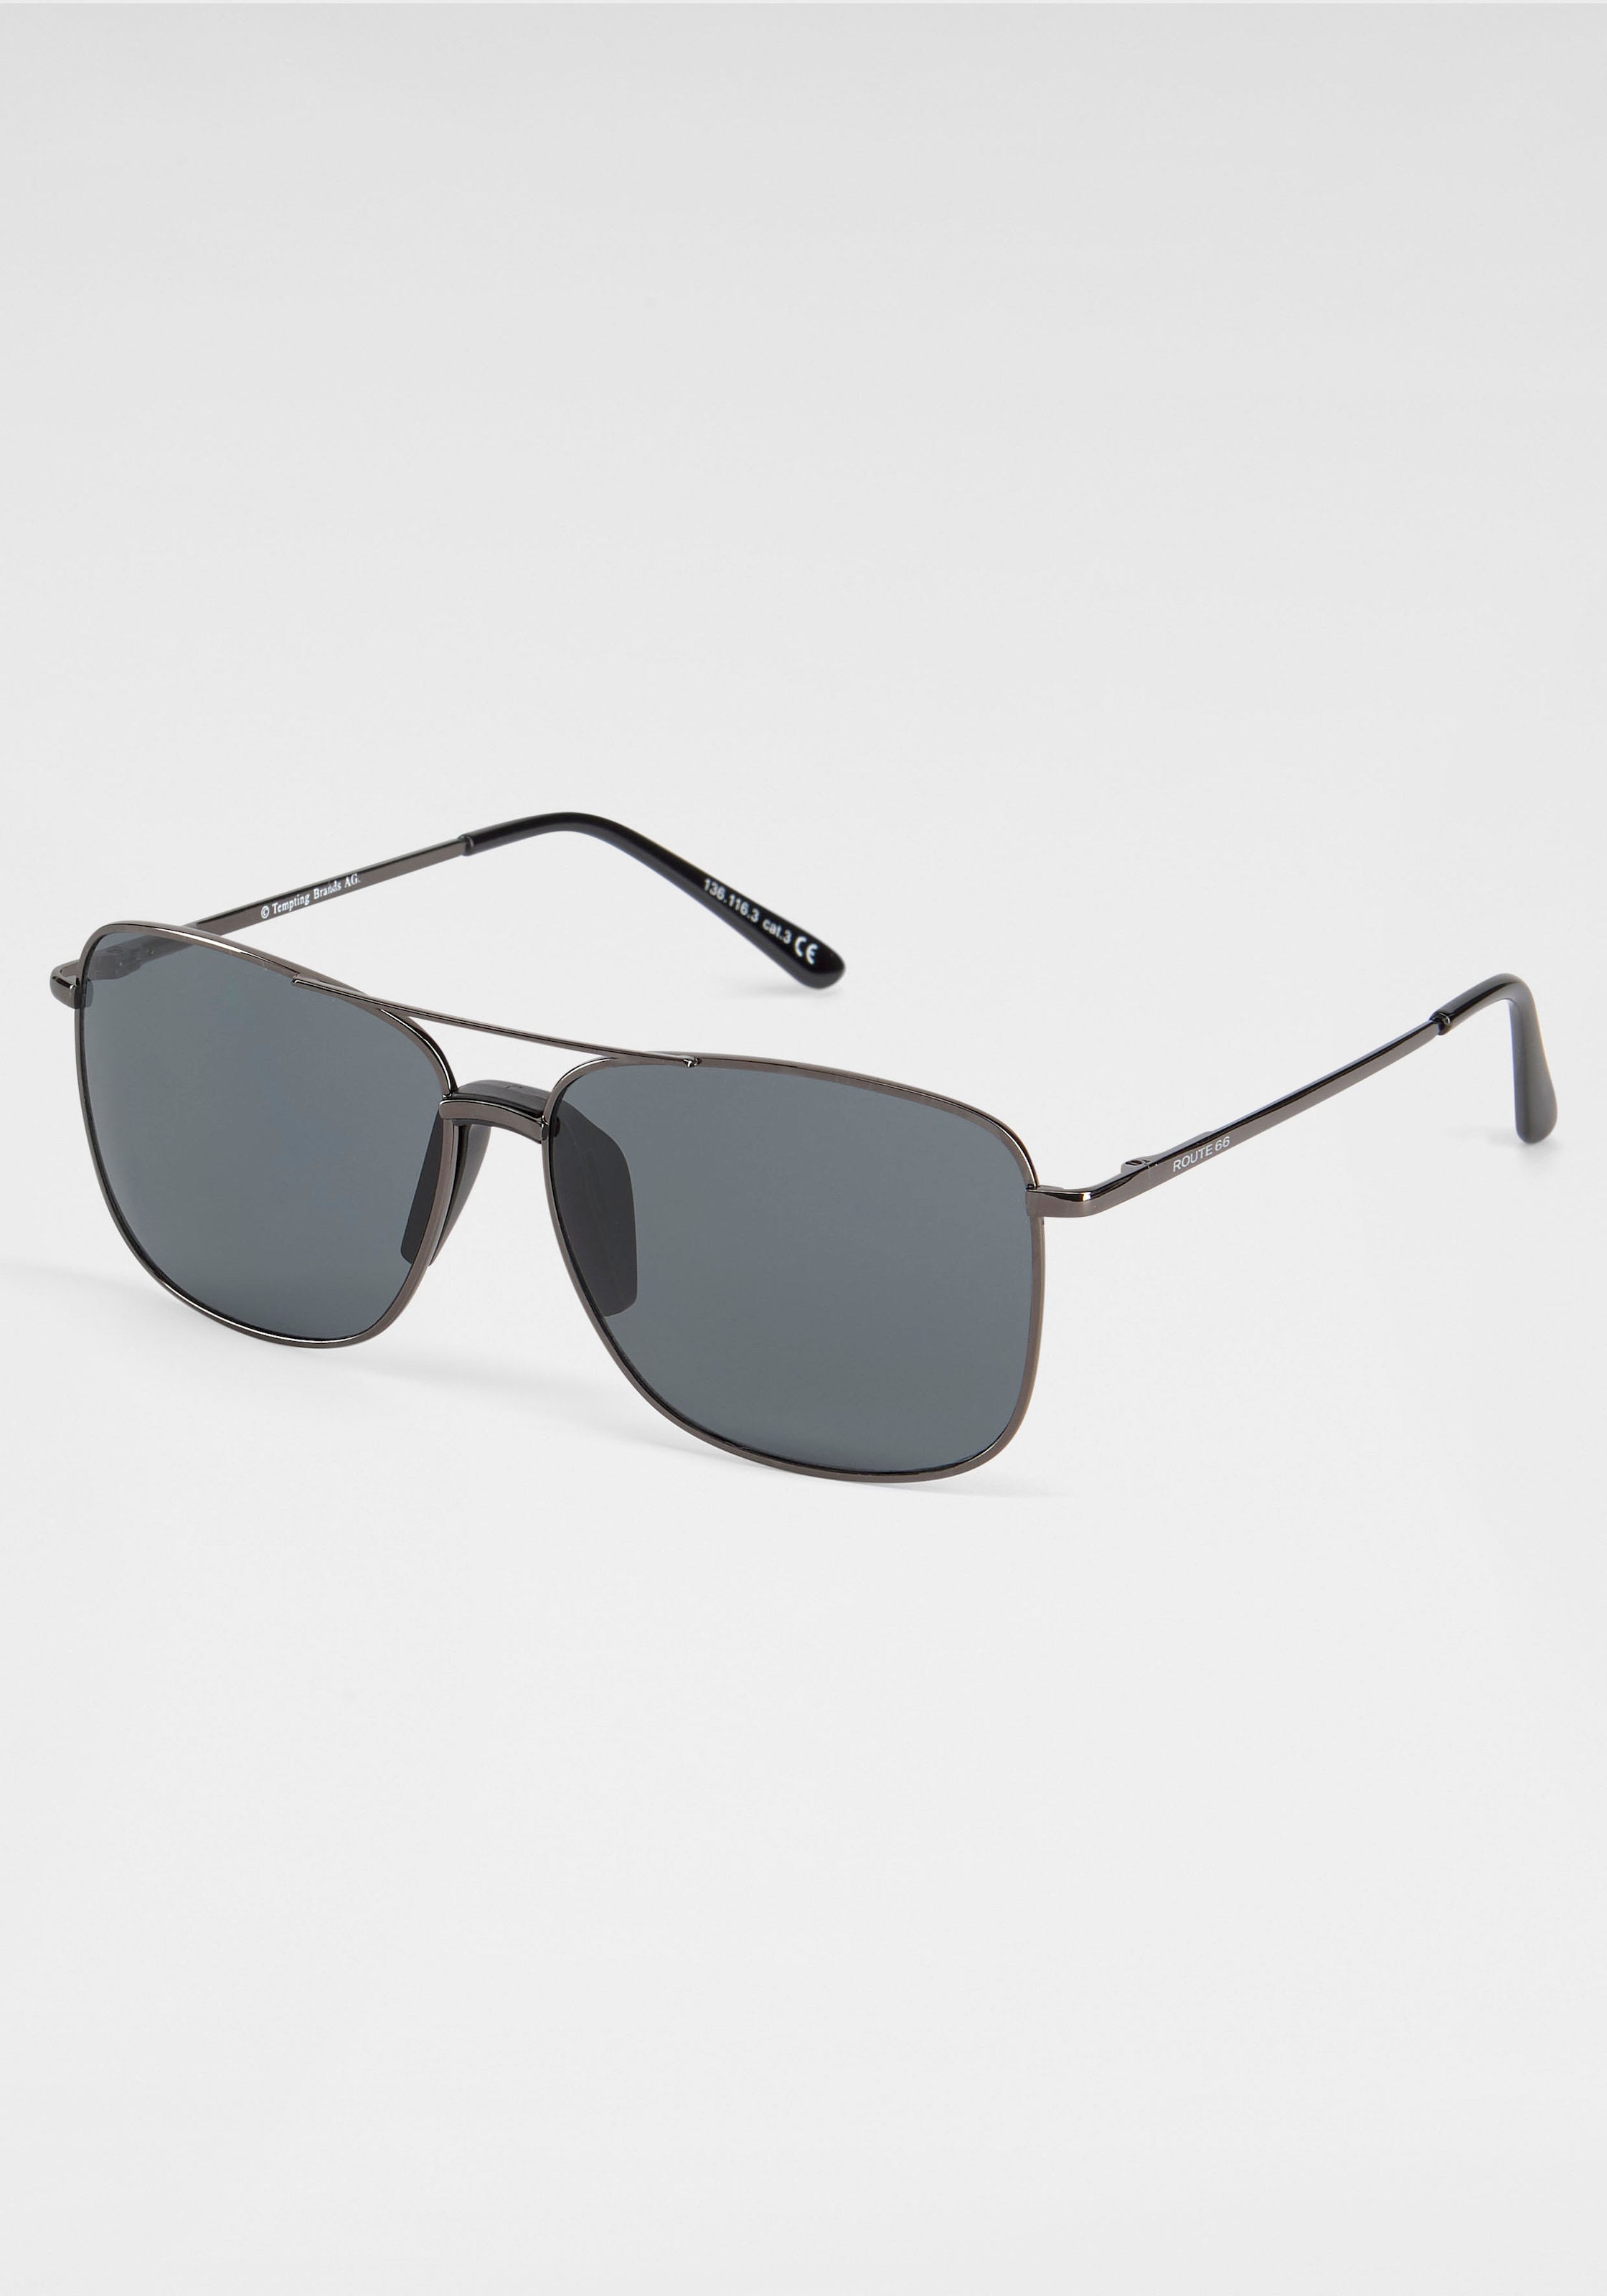 online verspiegelten Sonnenbrille, Bench. mit kaufen Gläsern